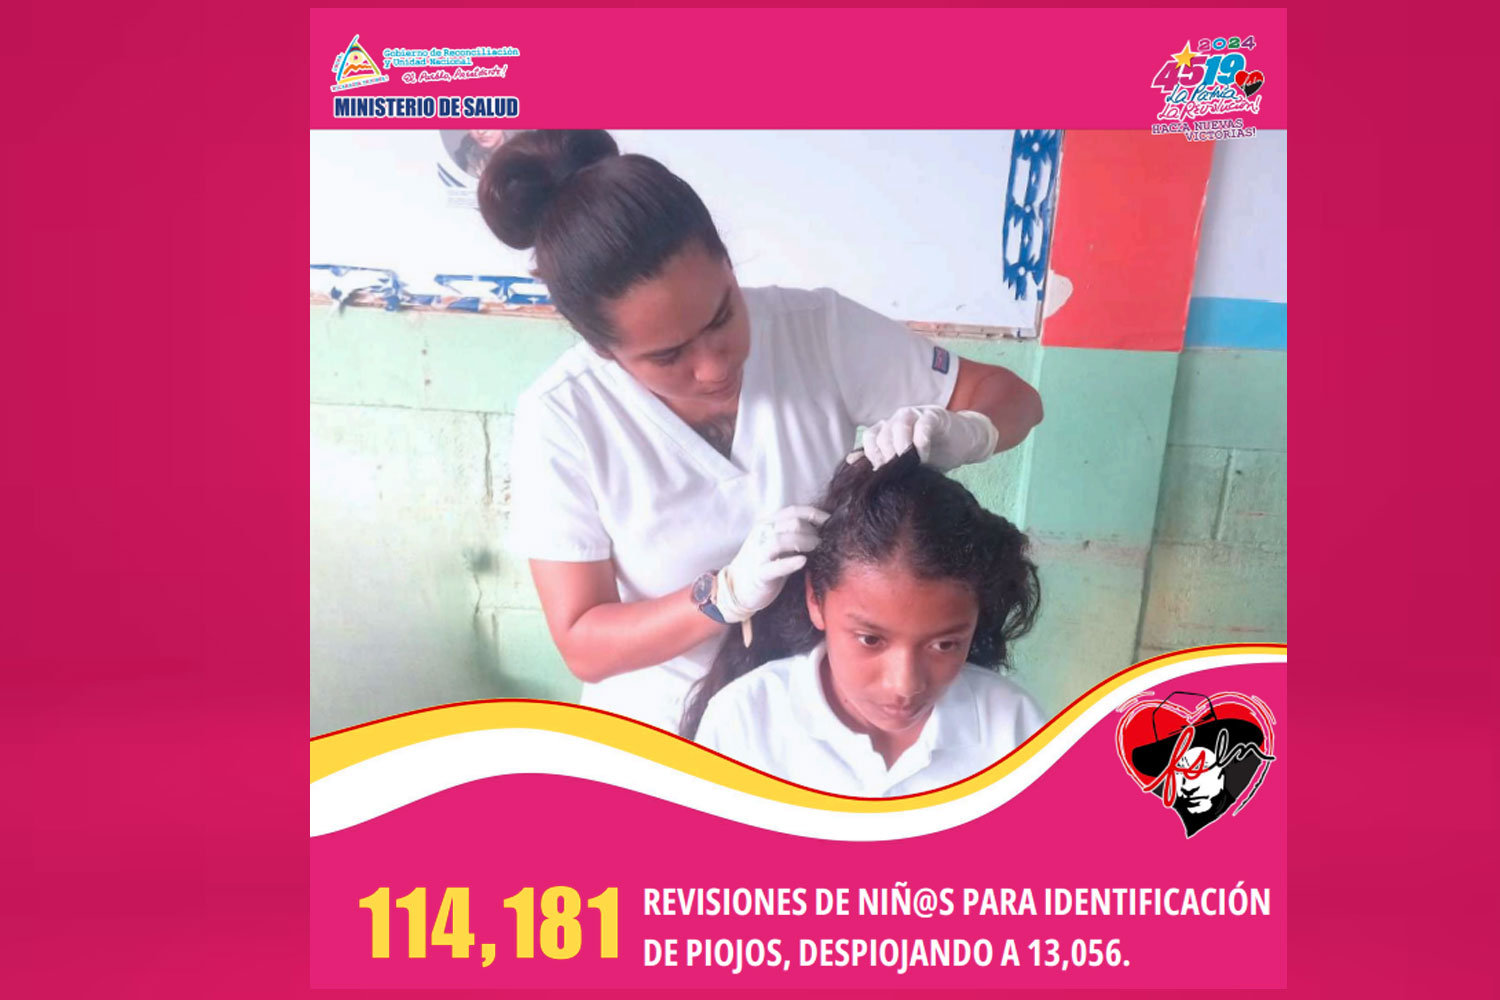 Foto:Más de 559 mil atenciones en Salud con el Plan Nacional “Escuelas Saludables”/Cortesía